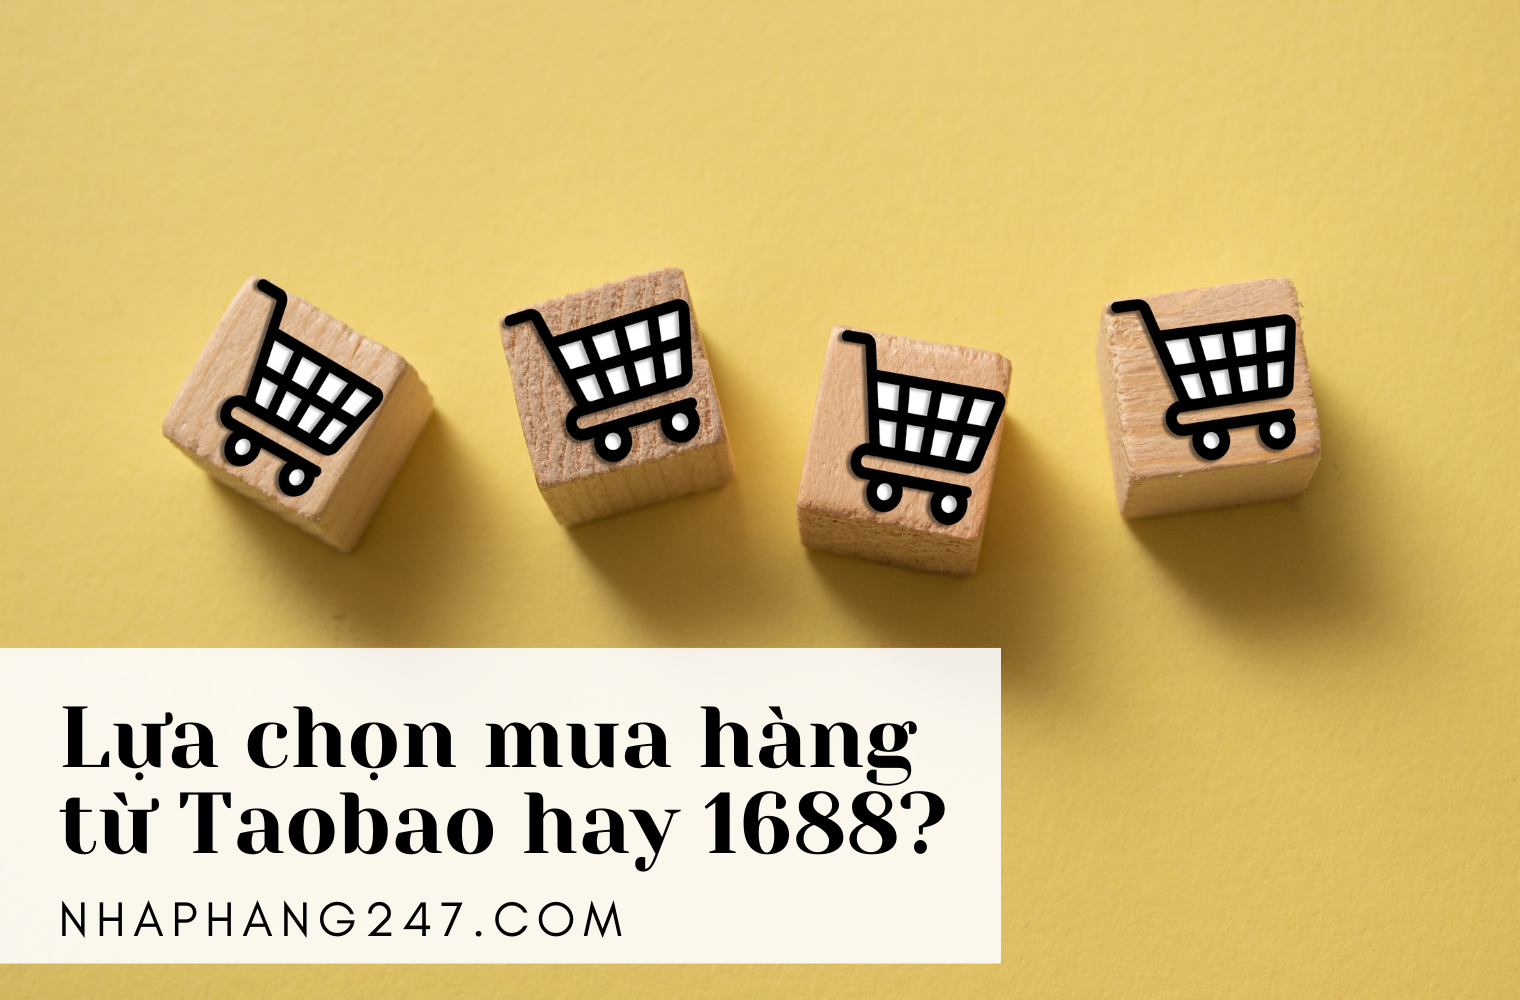 Nên mua hàng ở Taobao hay 1688?